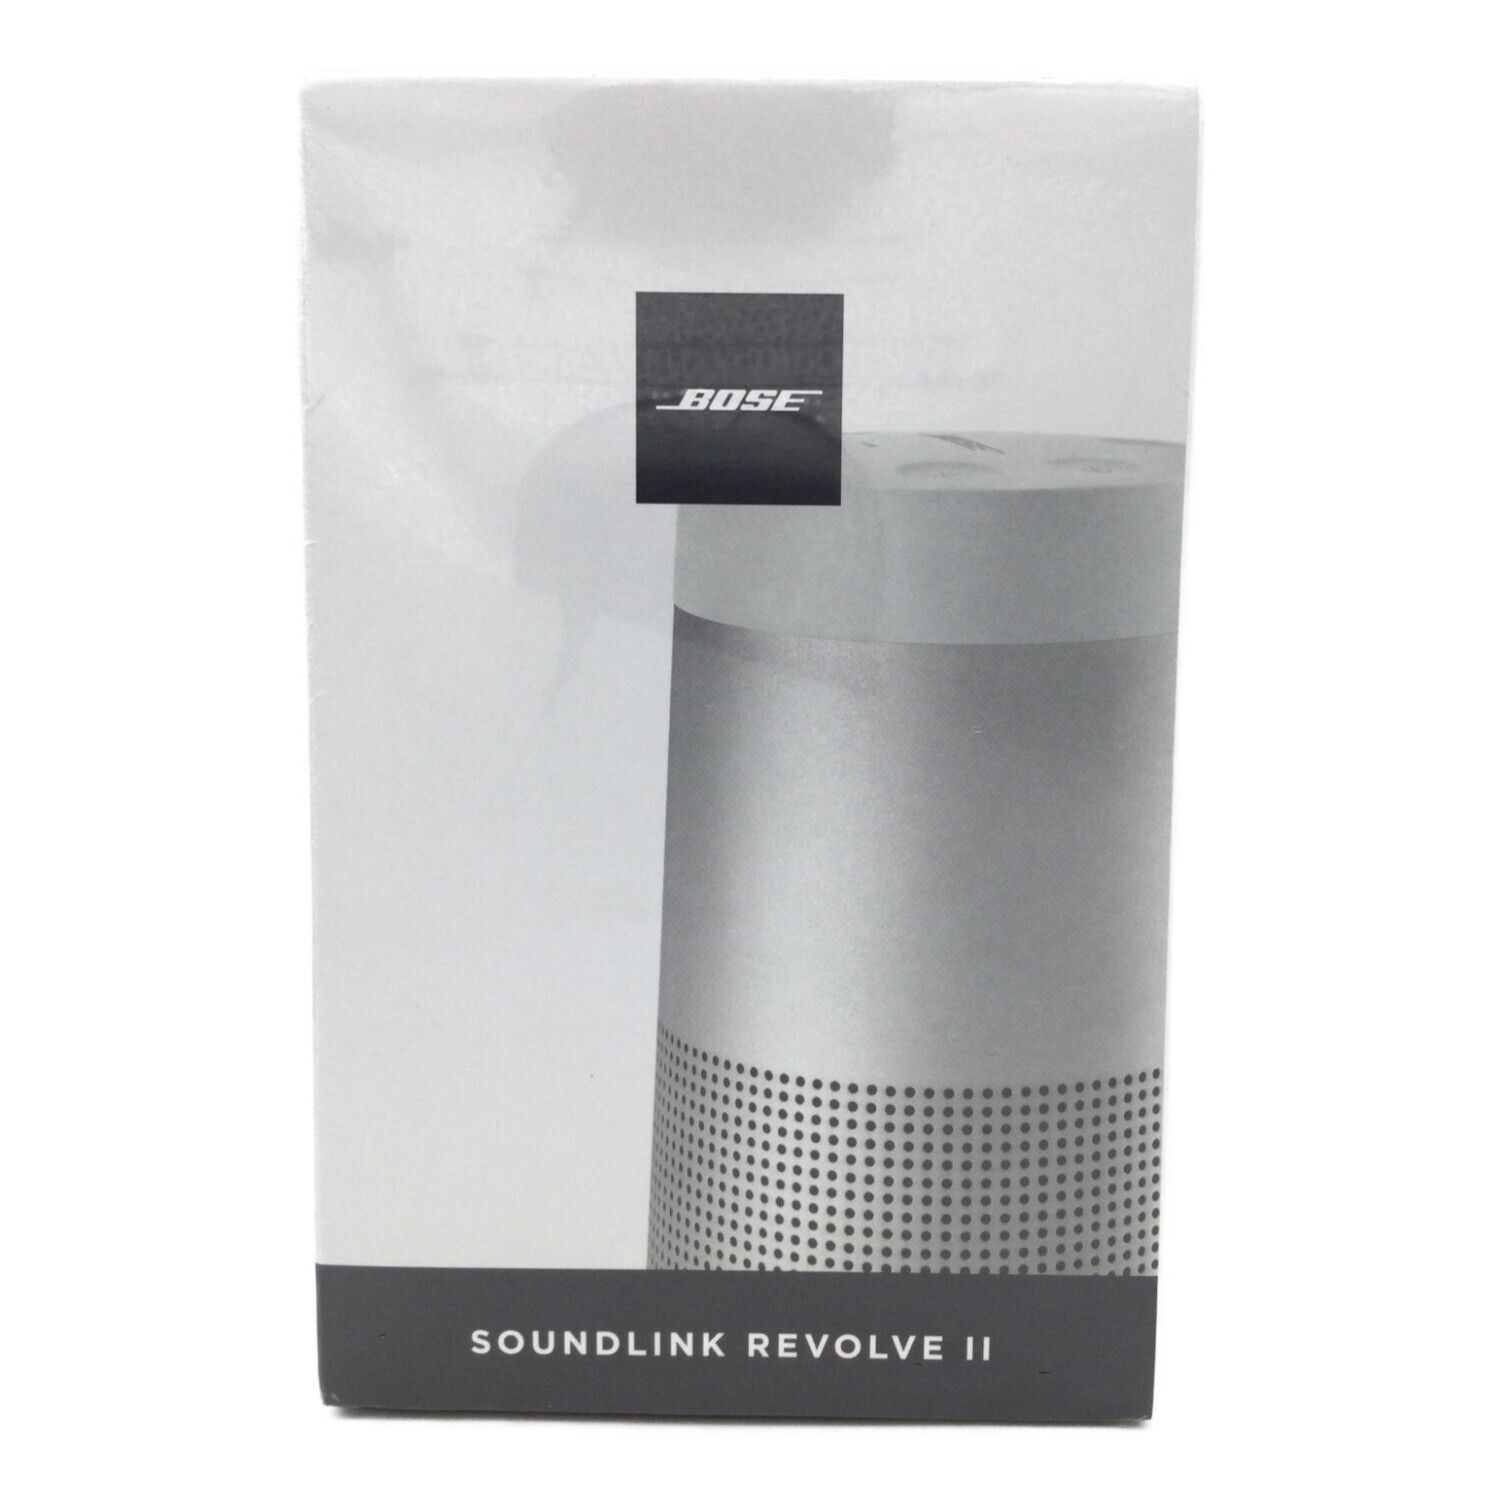 ボーズBOSE SoundLink Revolve Bluetooth speake…